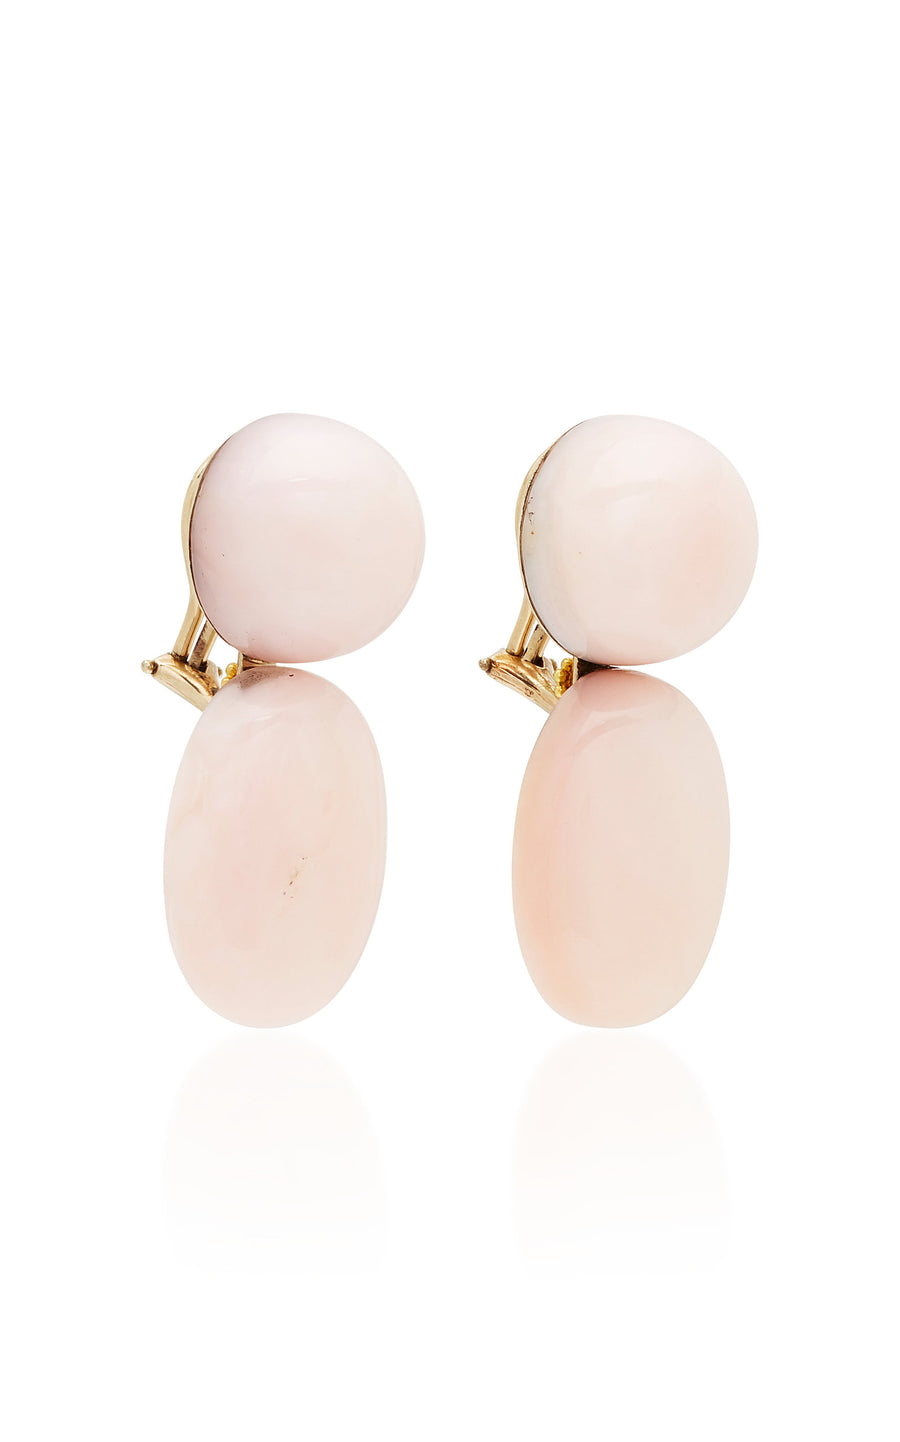 Double Stone Pink Opal Earrings